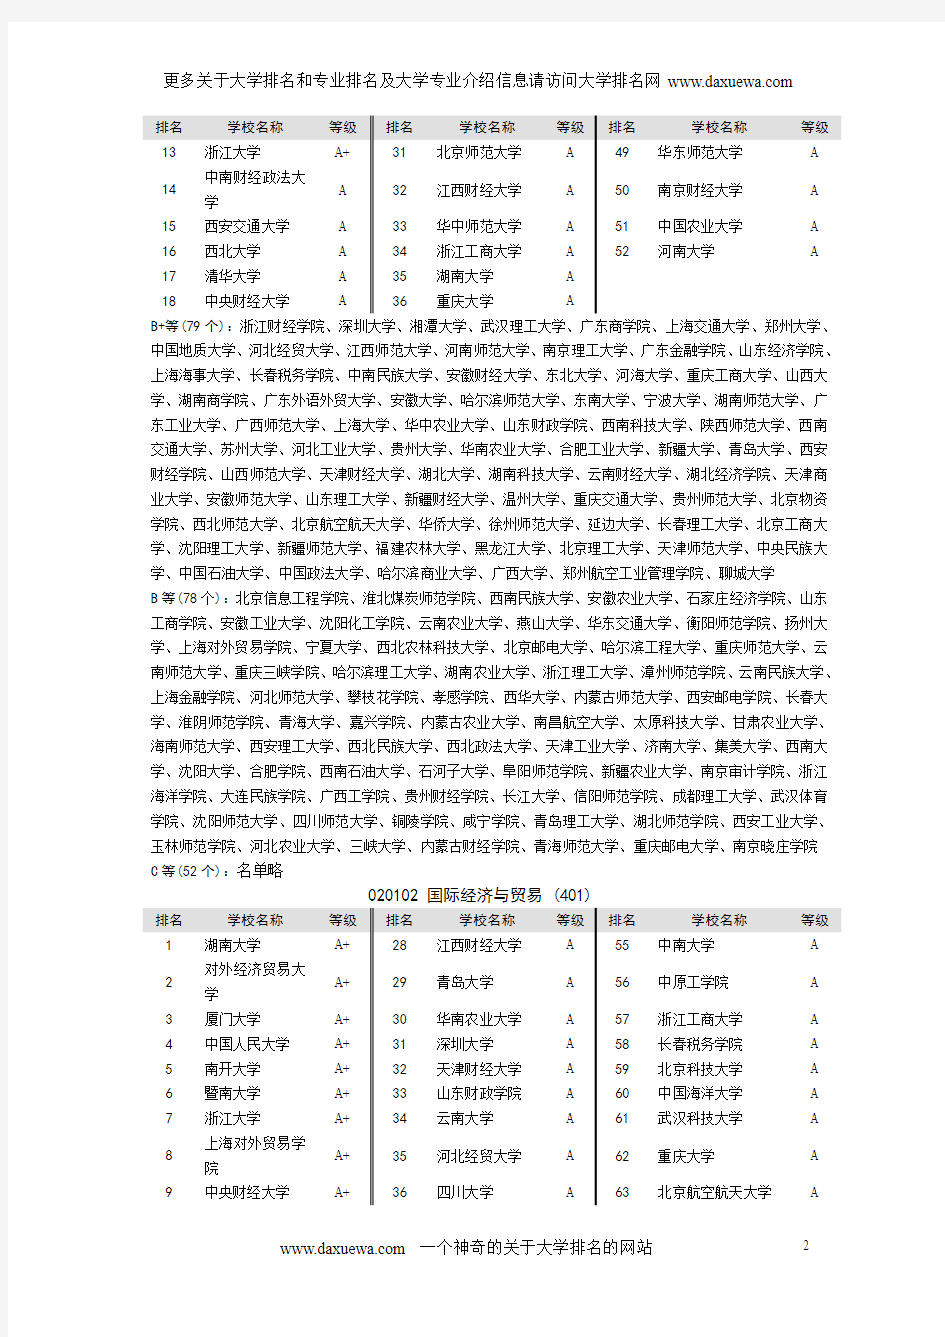 中国专业排名(2012年最新版)